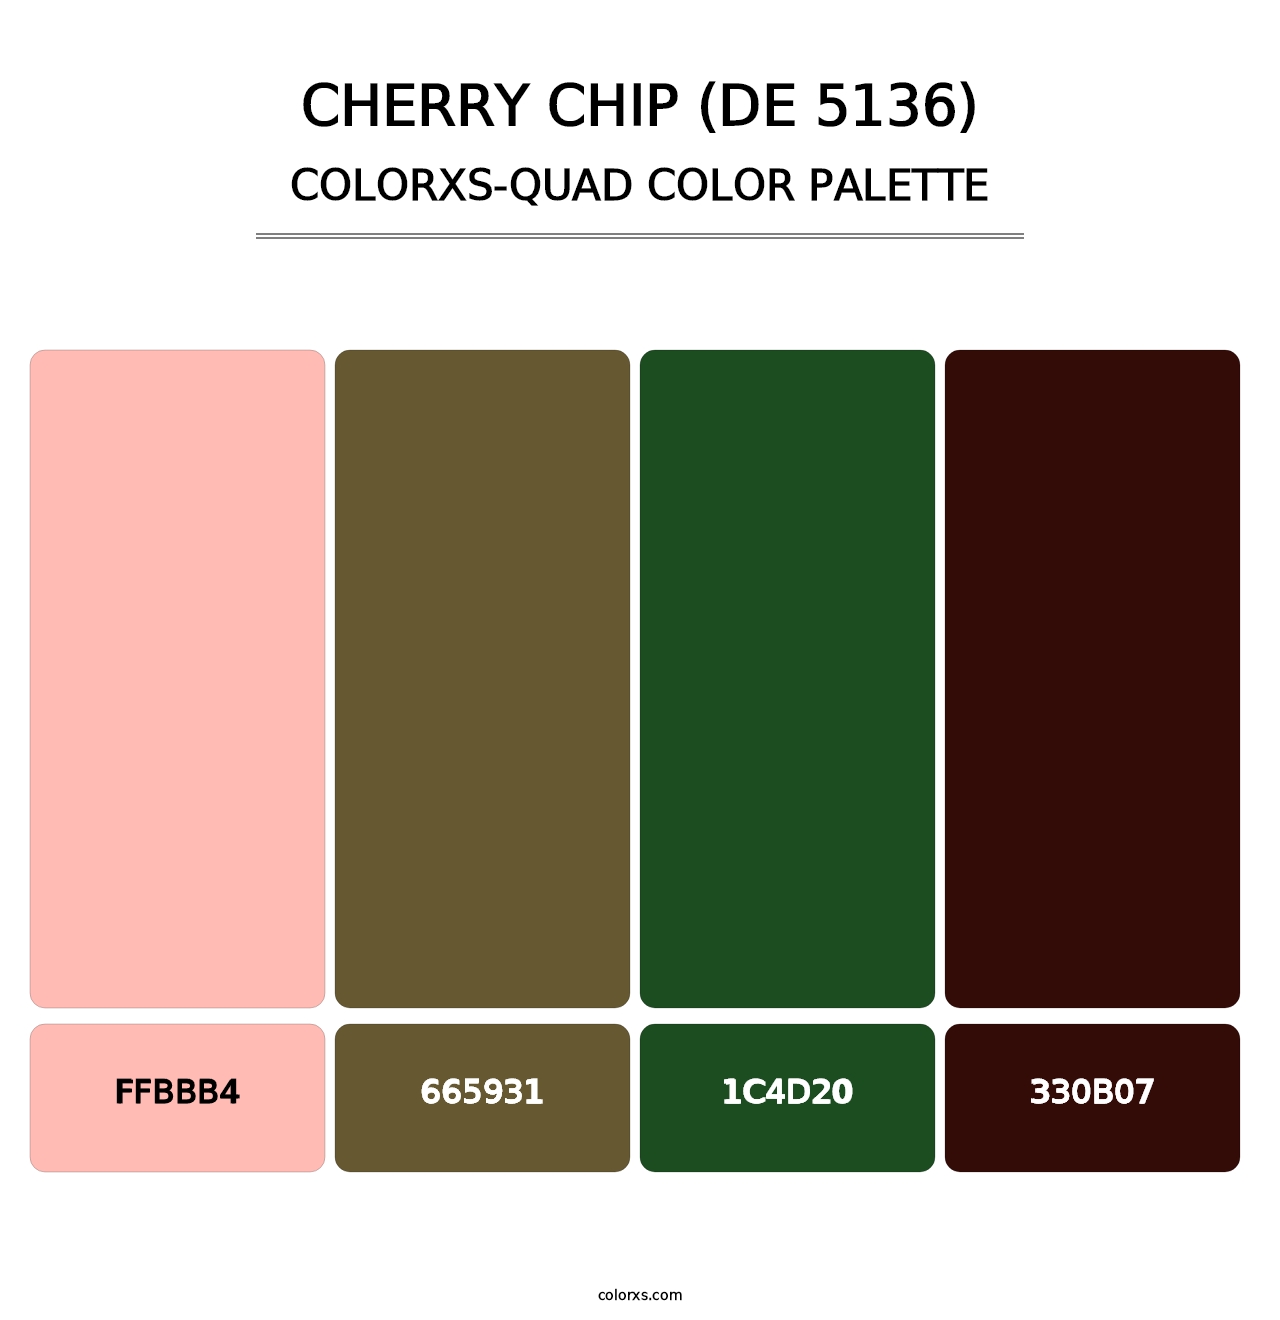 Cherry Chip (DE 5136) - Colorxs Quad Palette